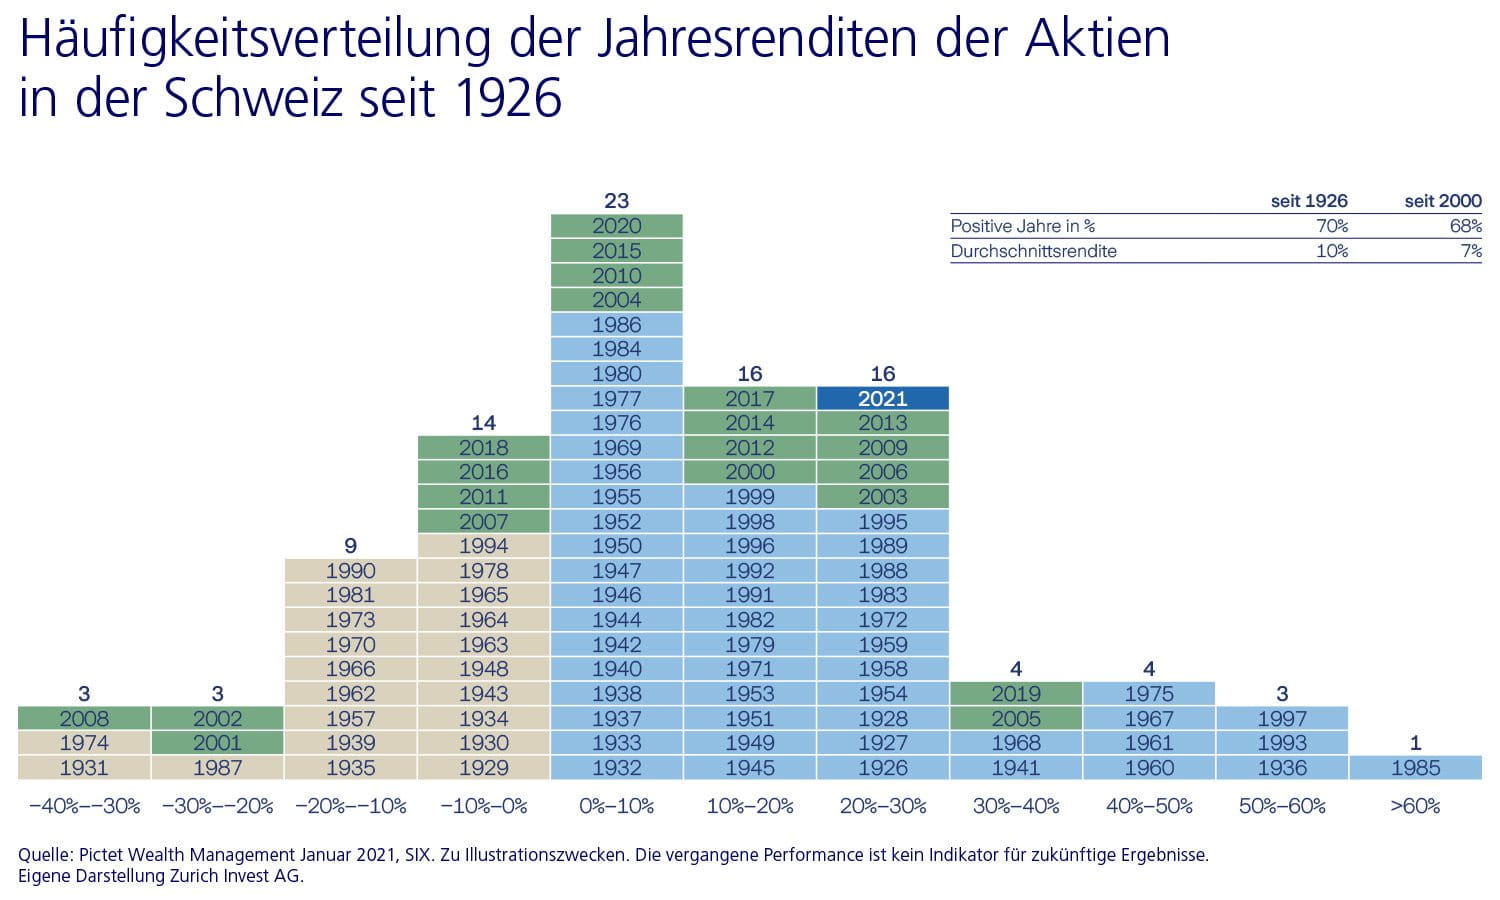 Häufigkeitsverteilung der Jahresrenditen der Aktien in der Schweiz seit 1926